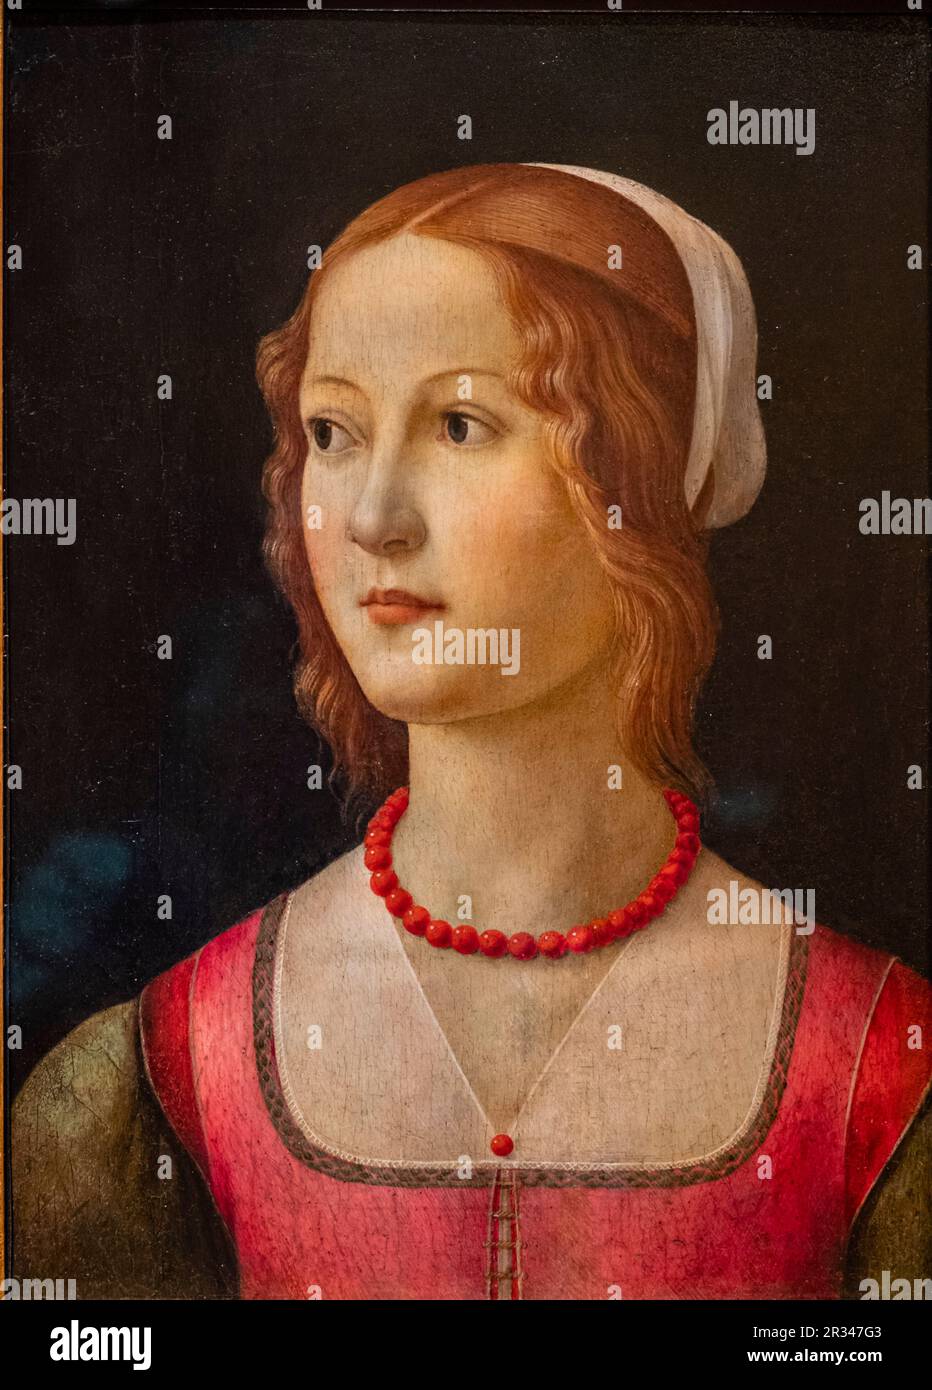 retrato de una joven, Ghirlandaio, Florencia, 1490, temple sobre madera, Fundación Calouste Gulbenkian, («Fundação Calouste Gulbenkian»), Lisboa, Portugal. Stock Photo